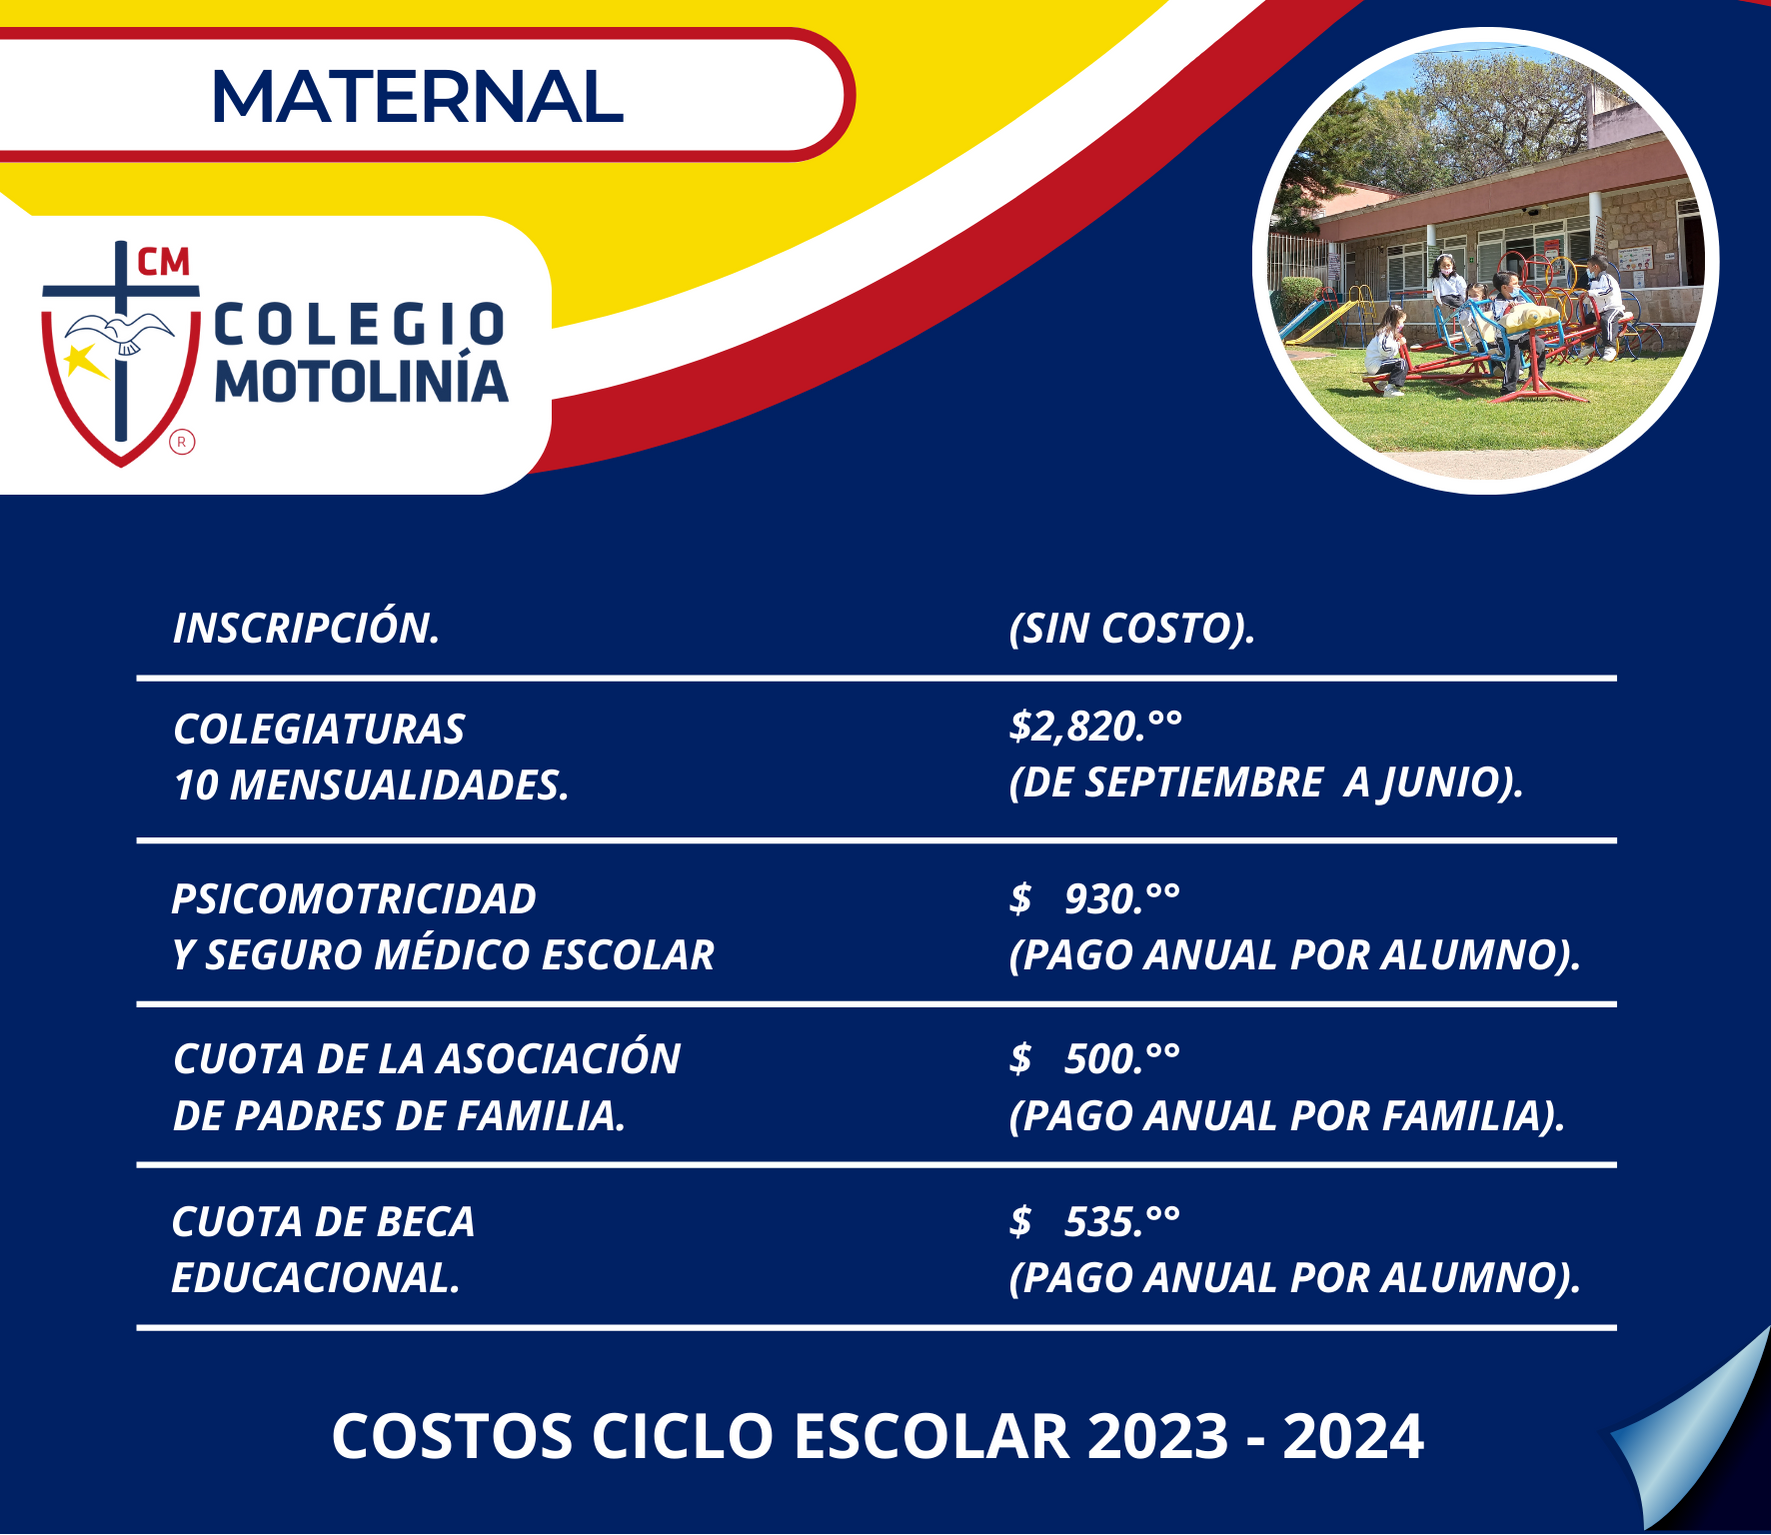 COSTOS MATERNAL CICLO 2023-2024